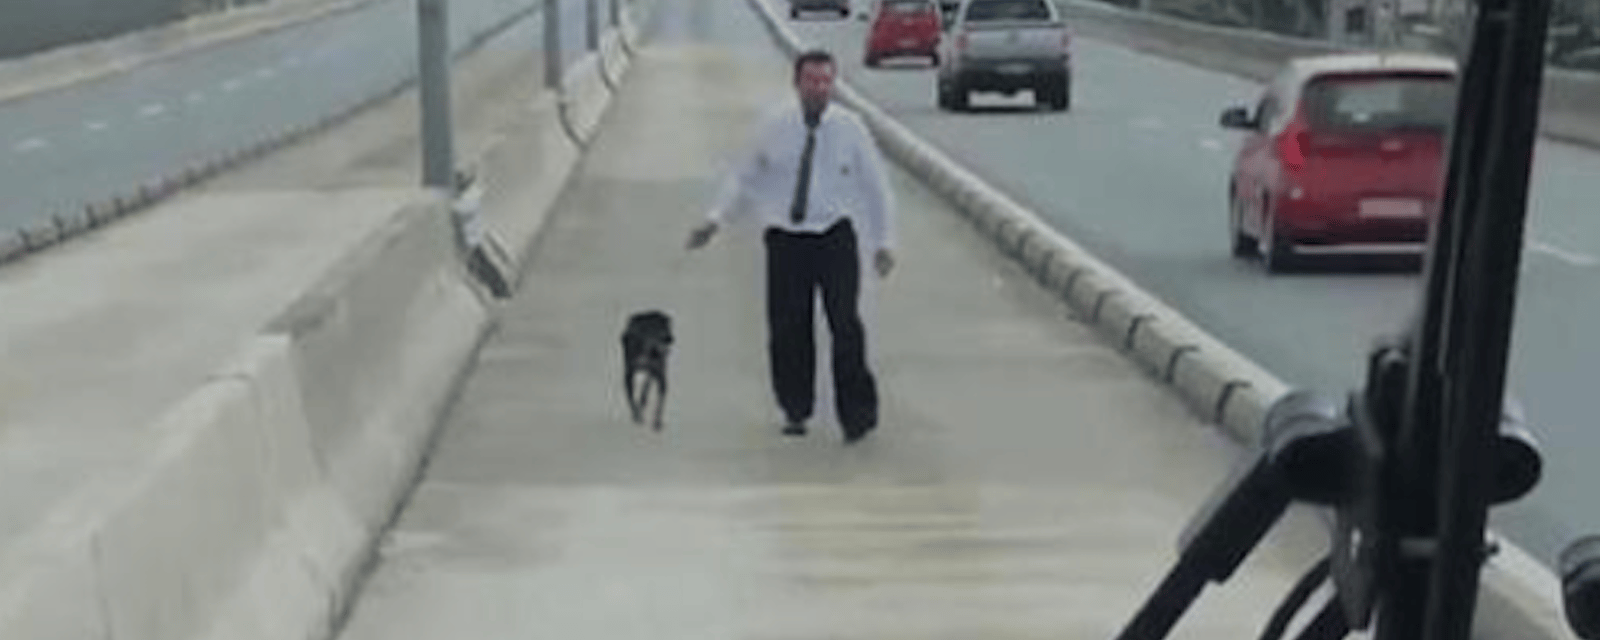 Ce chauffeur de bus au grand coeur a sauvé un chien sur l’autoroute